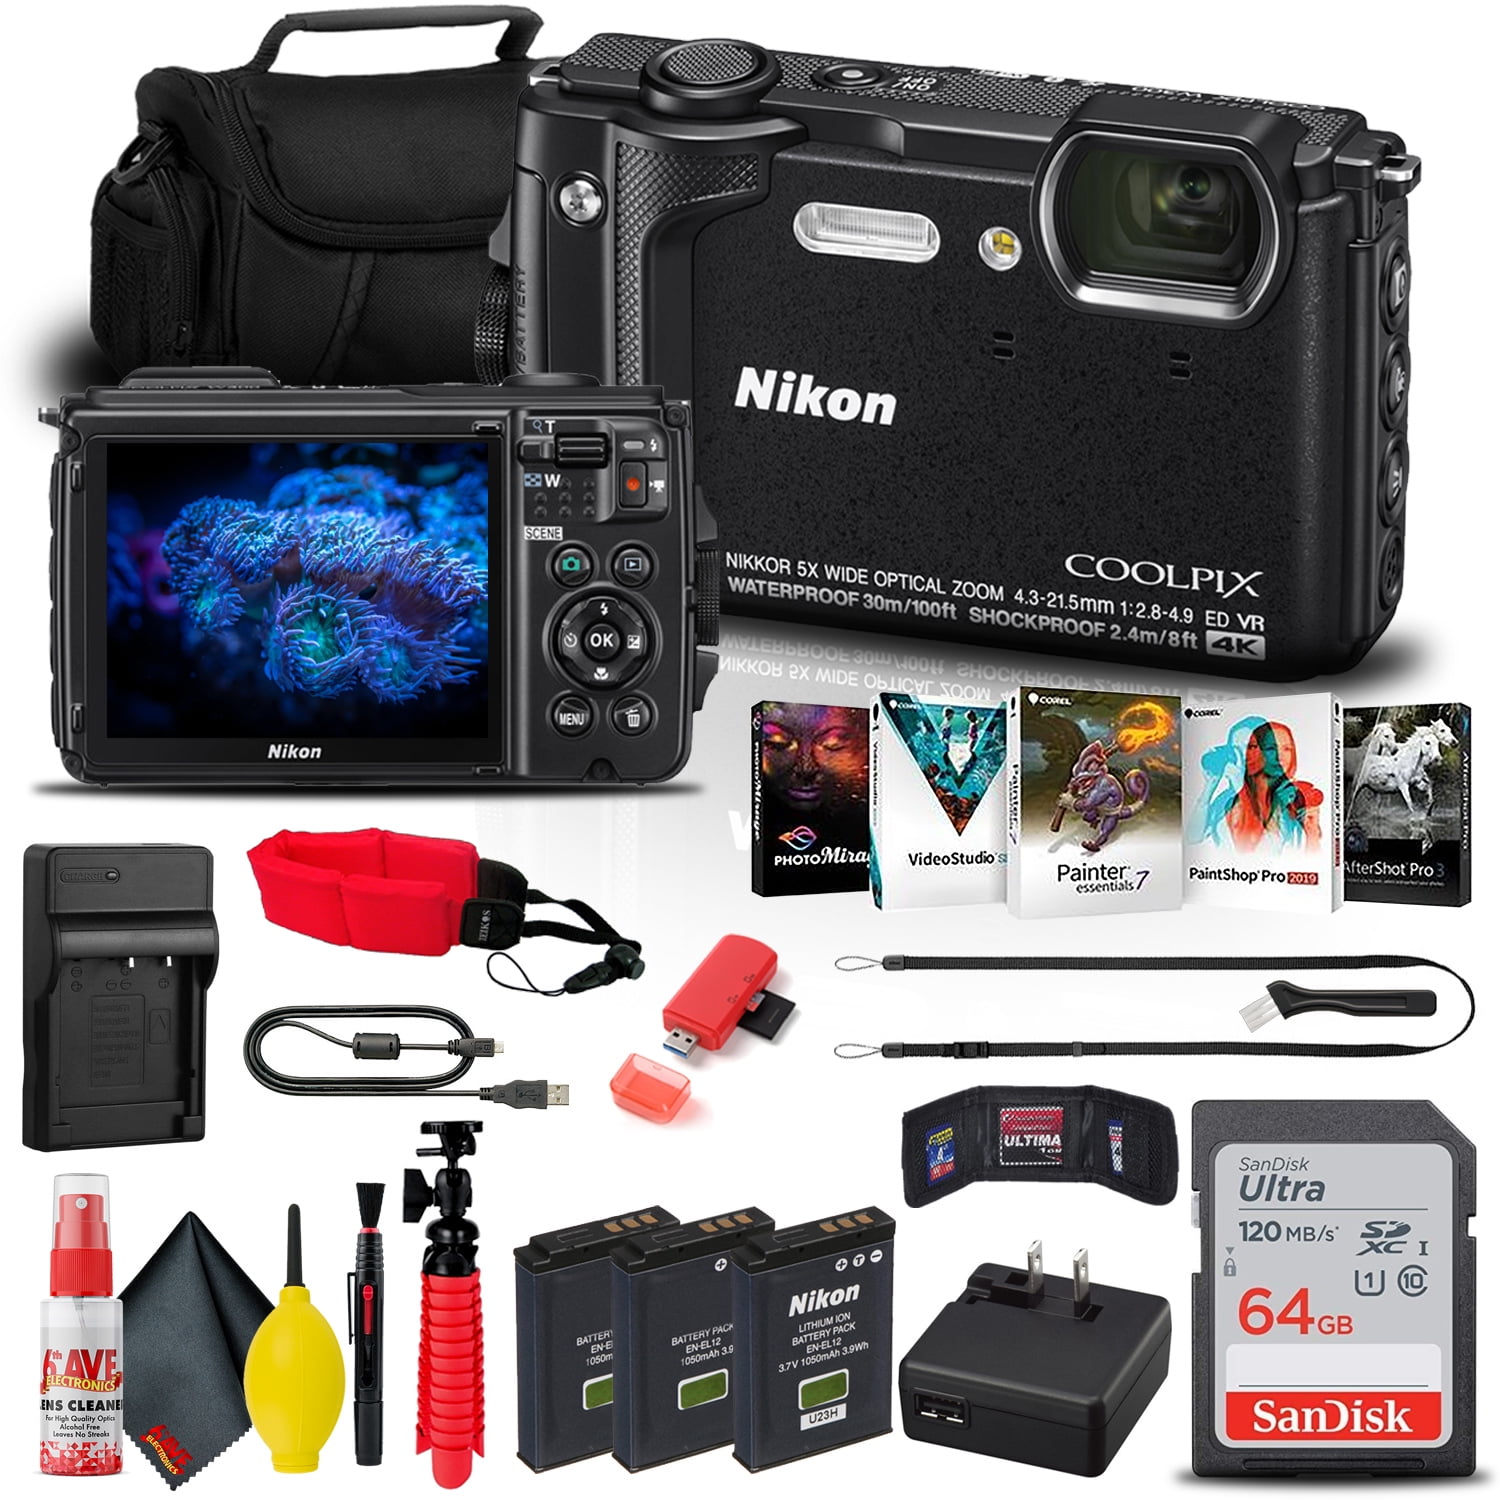 Nikon COOLPIX W300 Digital Camera (Black) (26523) + 64GB Card +